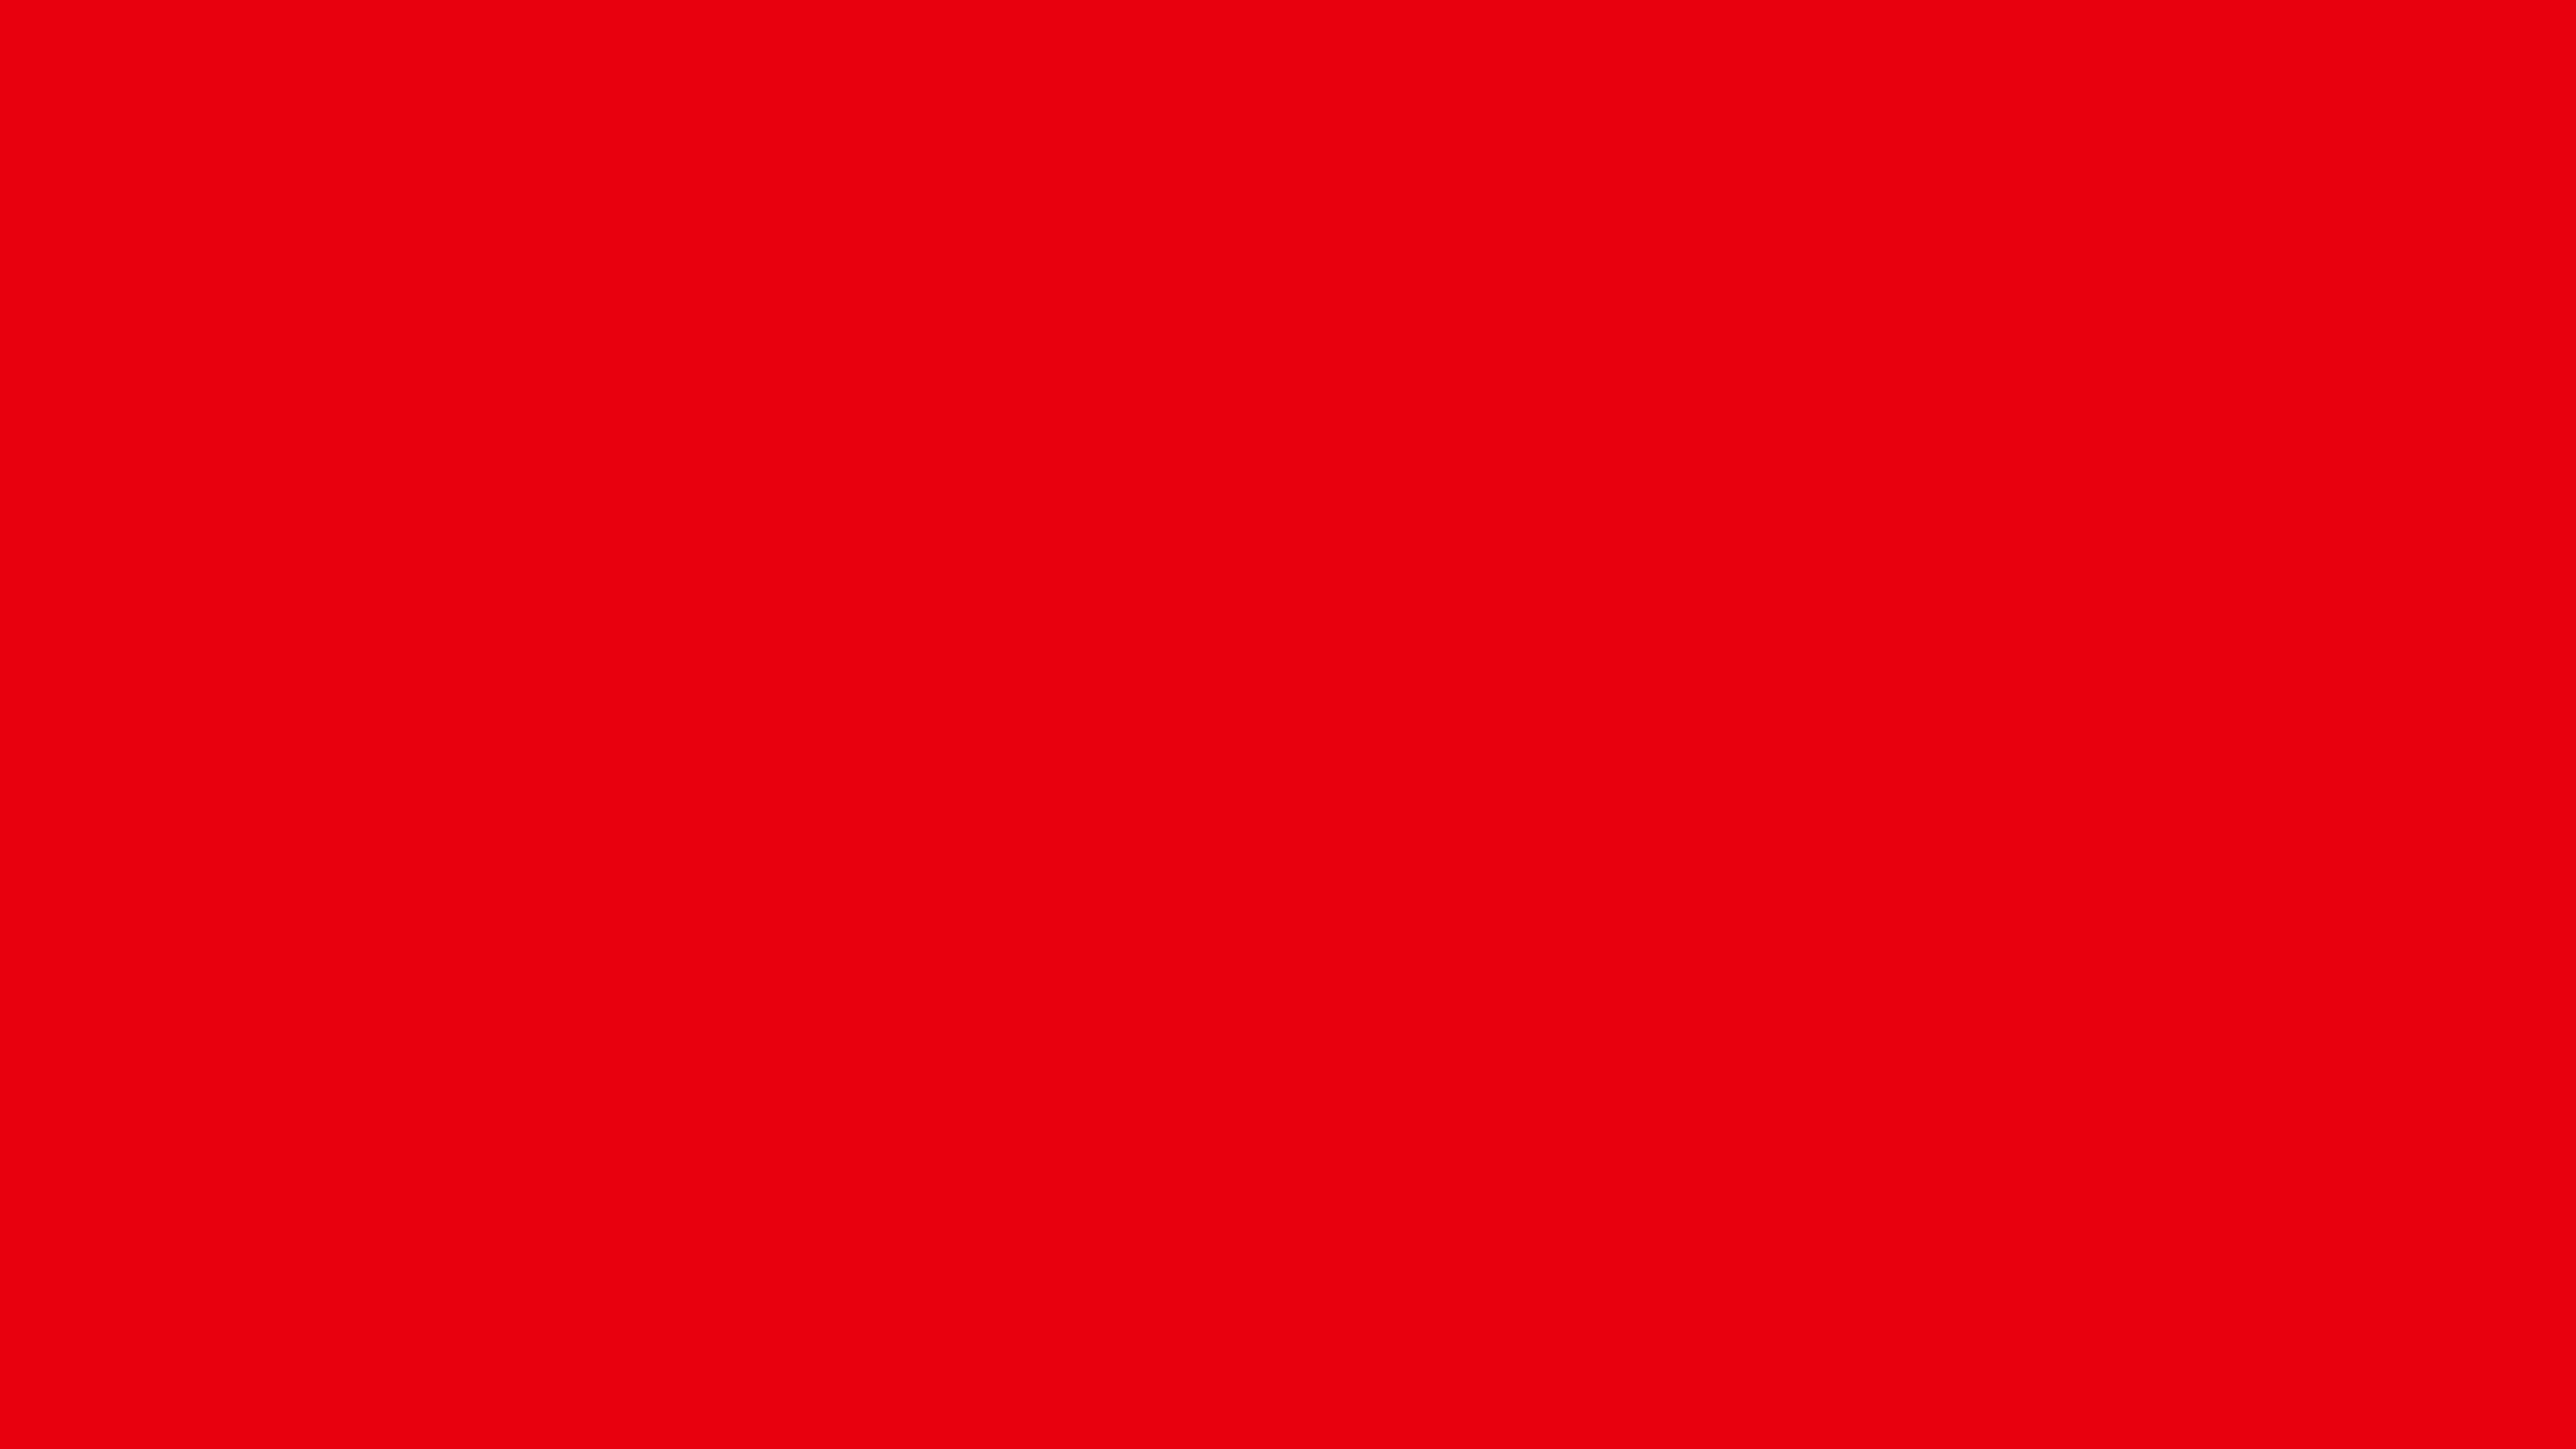 Красный цвет ff0000. Киноварь цвет. Яркий красный цвет. Красная киноварь цвет.